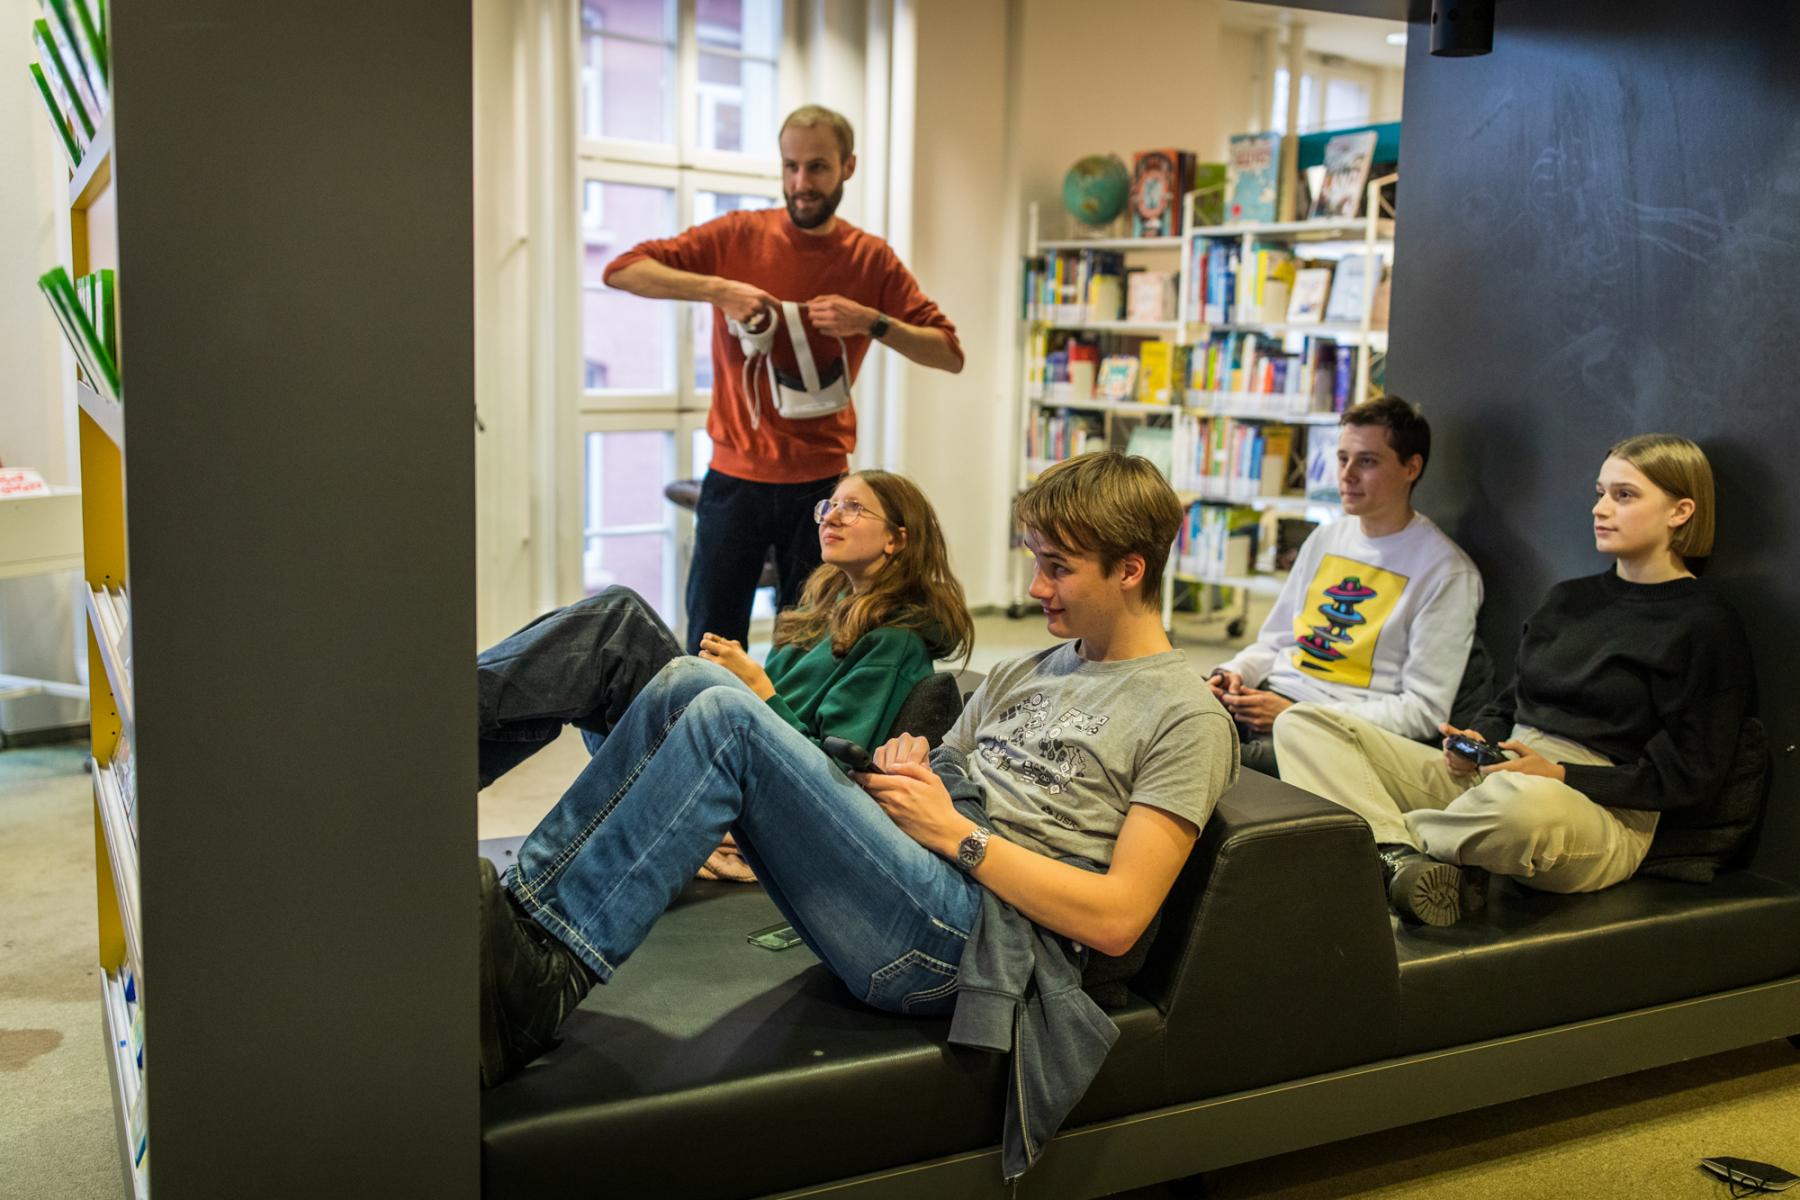 4 Jugendliche sitzen in einem Sitzgestell und spielen Konsolenspiele. Der Medienpädagoge steht dahinter und schaut zu.